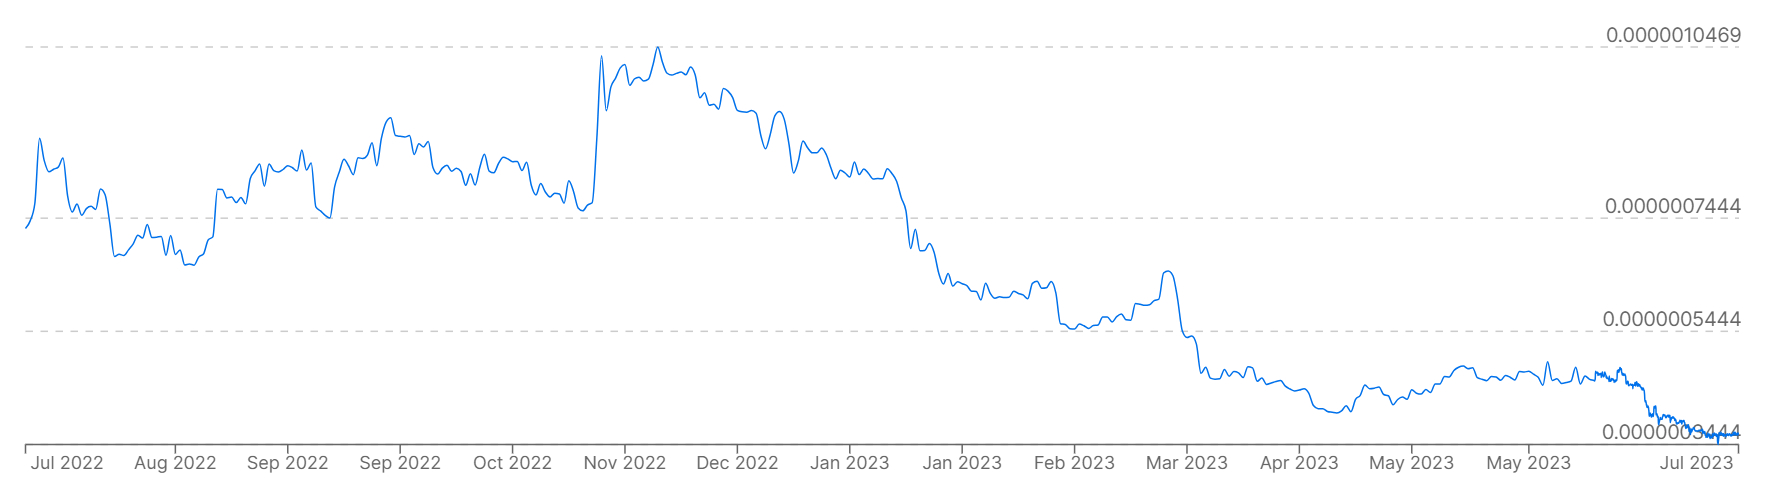 Un gráfico que muestra los precios de Bitcoin frente al rublo ruso en los últimos 12 meses.